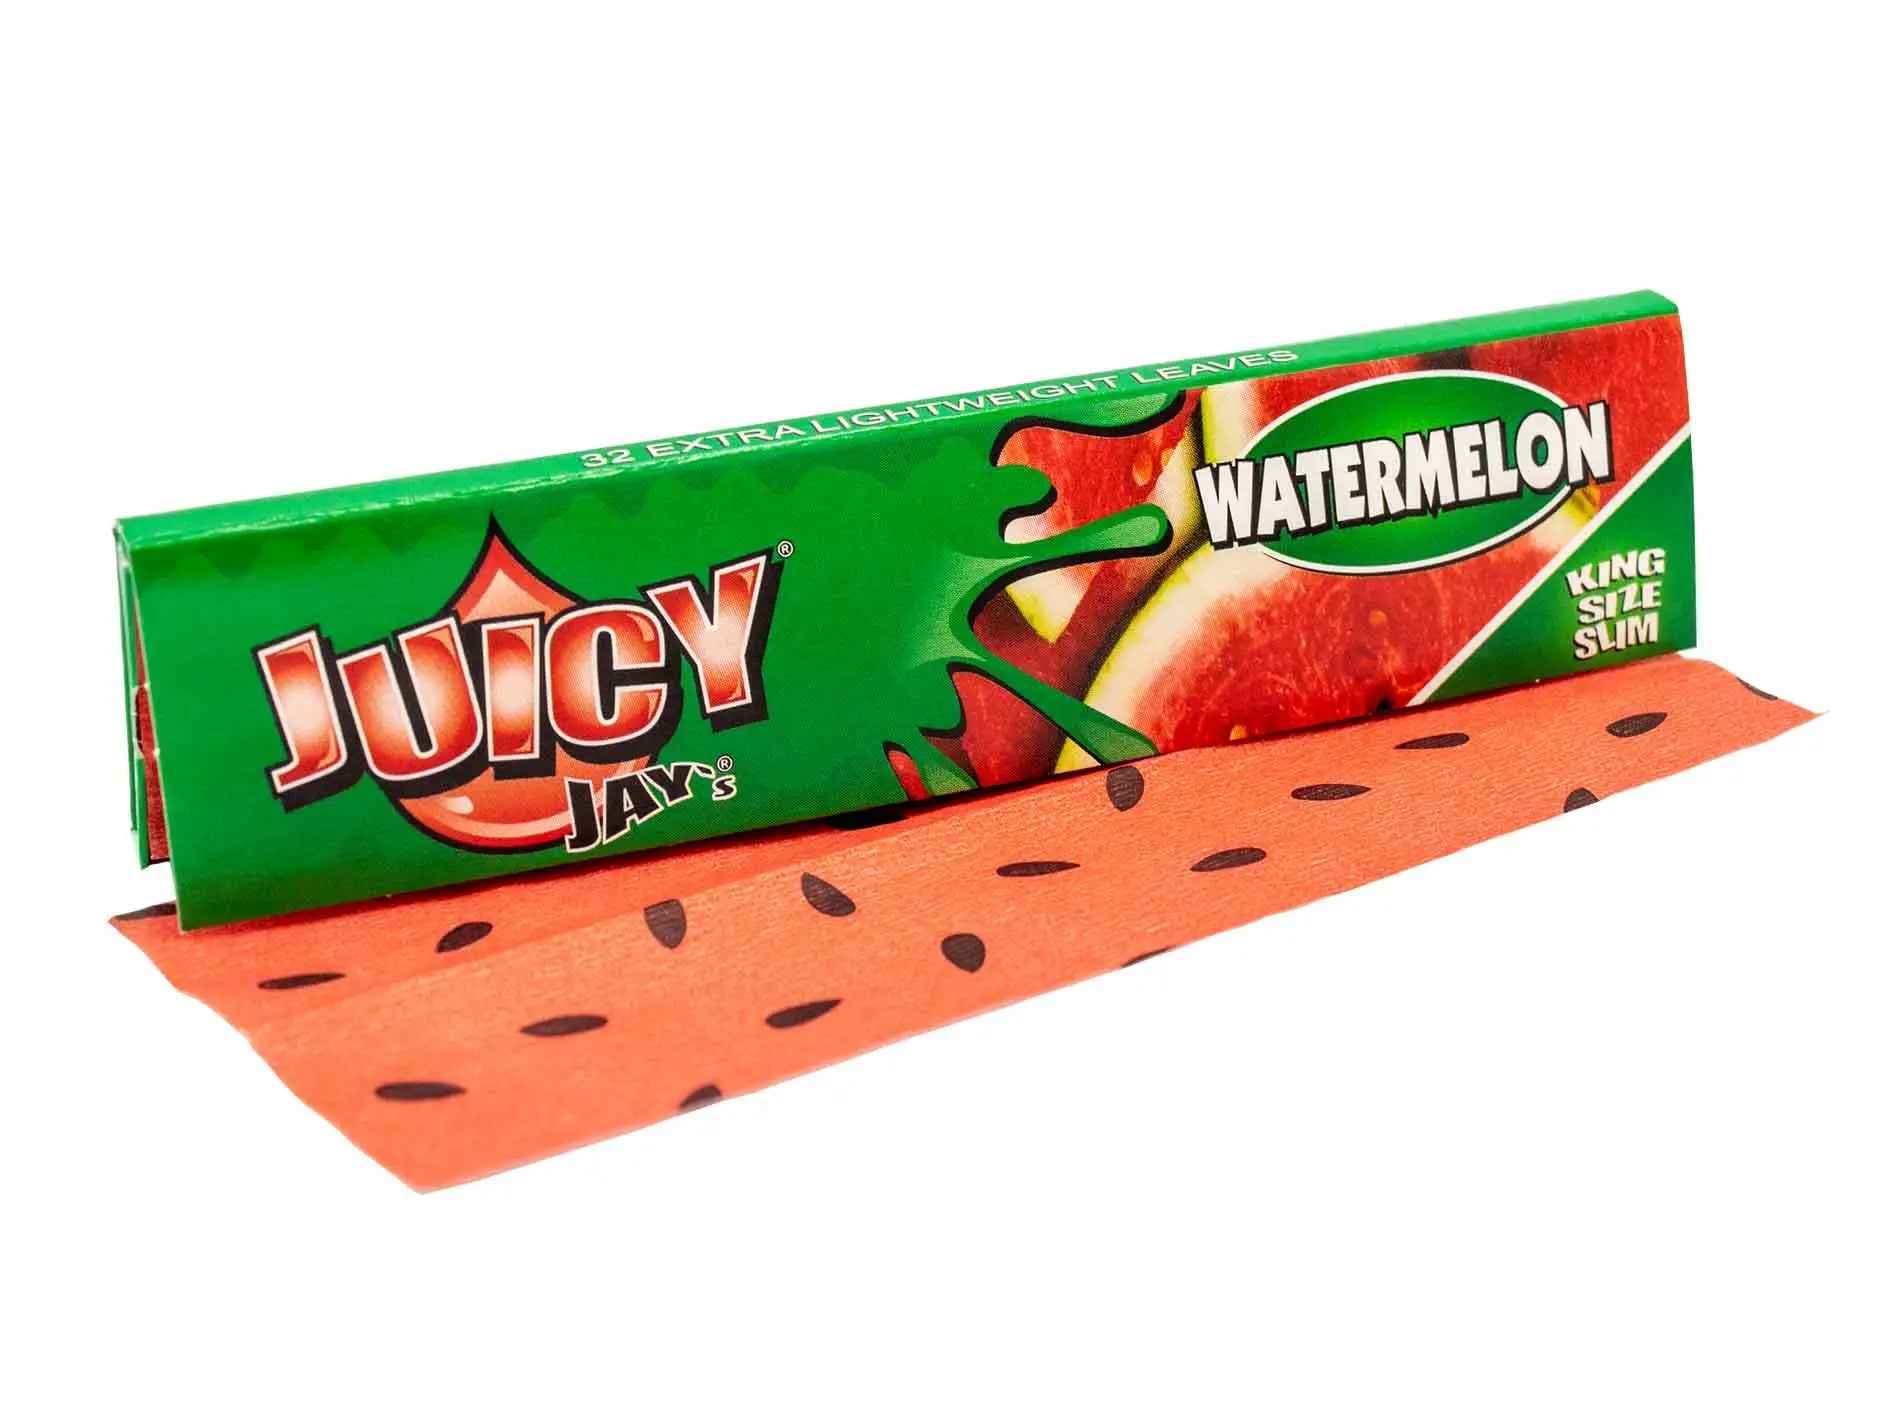 Juicy - Watermelon King  Size